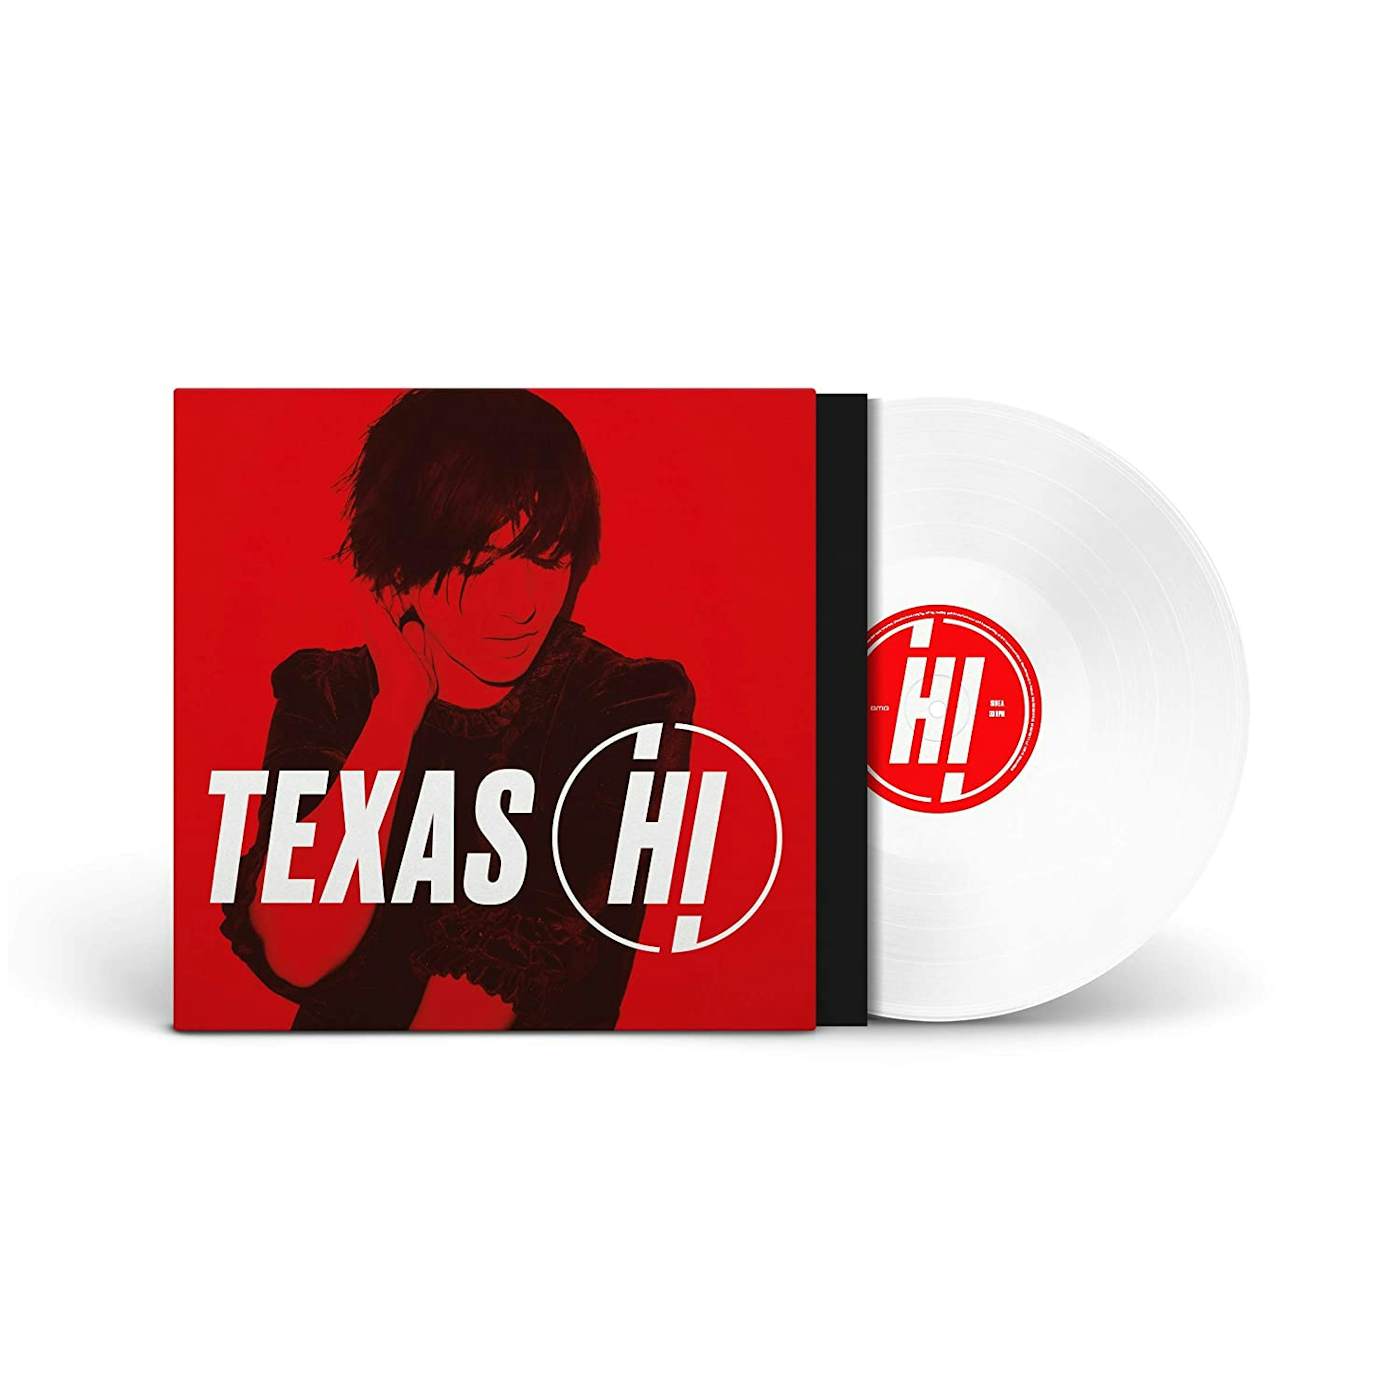 Texas Hi Vinyl Record